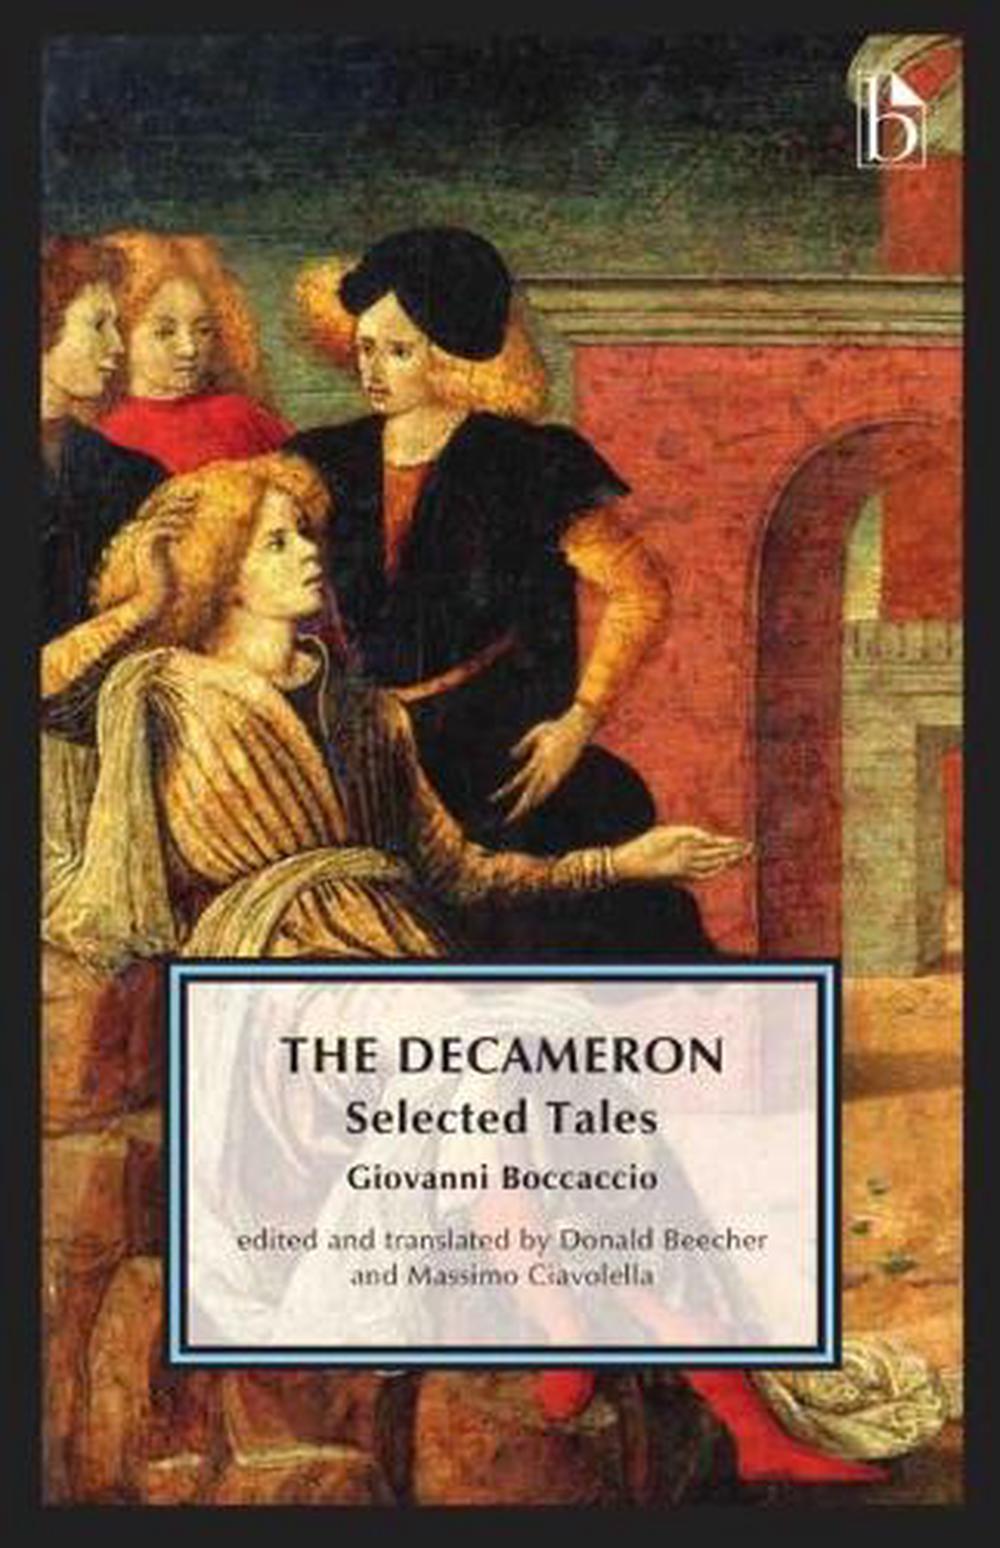 Decamerone by Giovanni Boccaccio